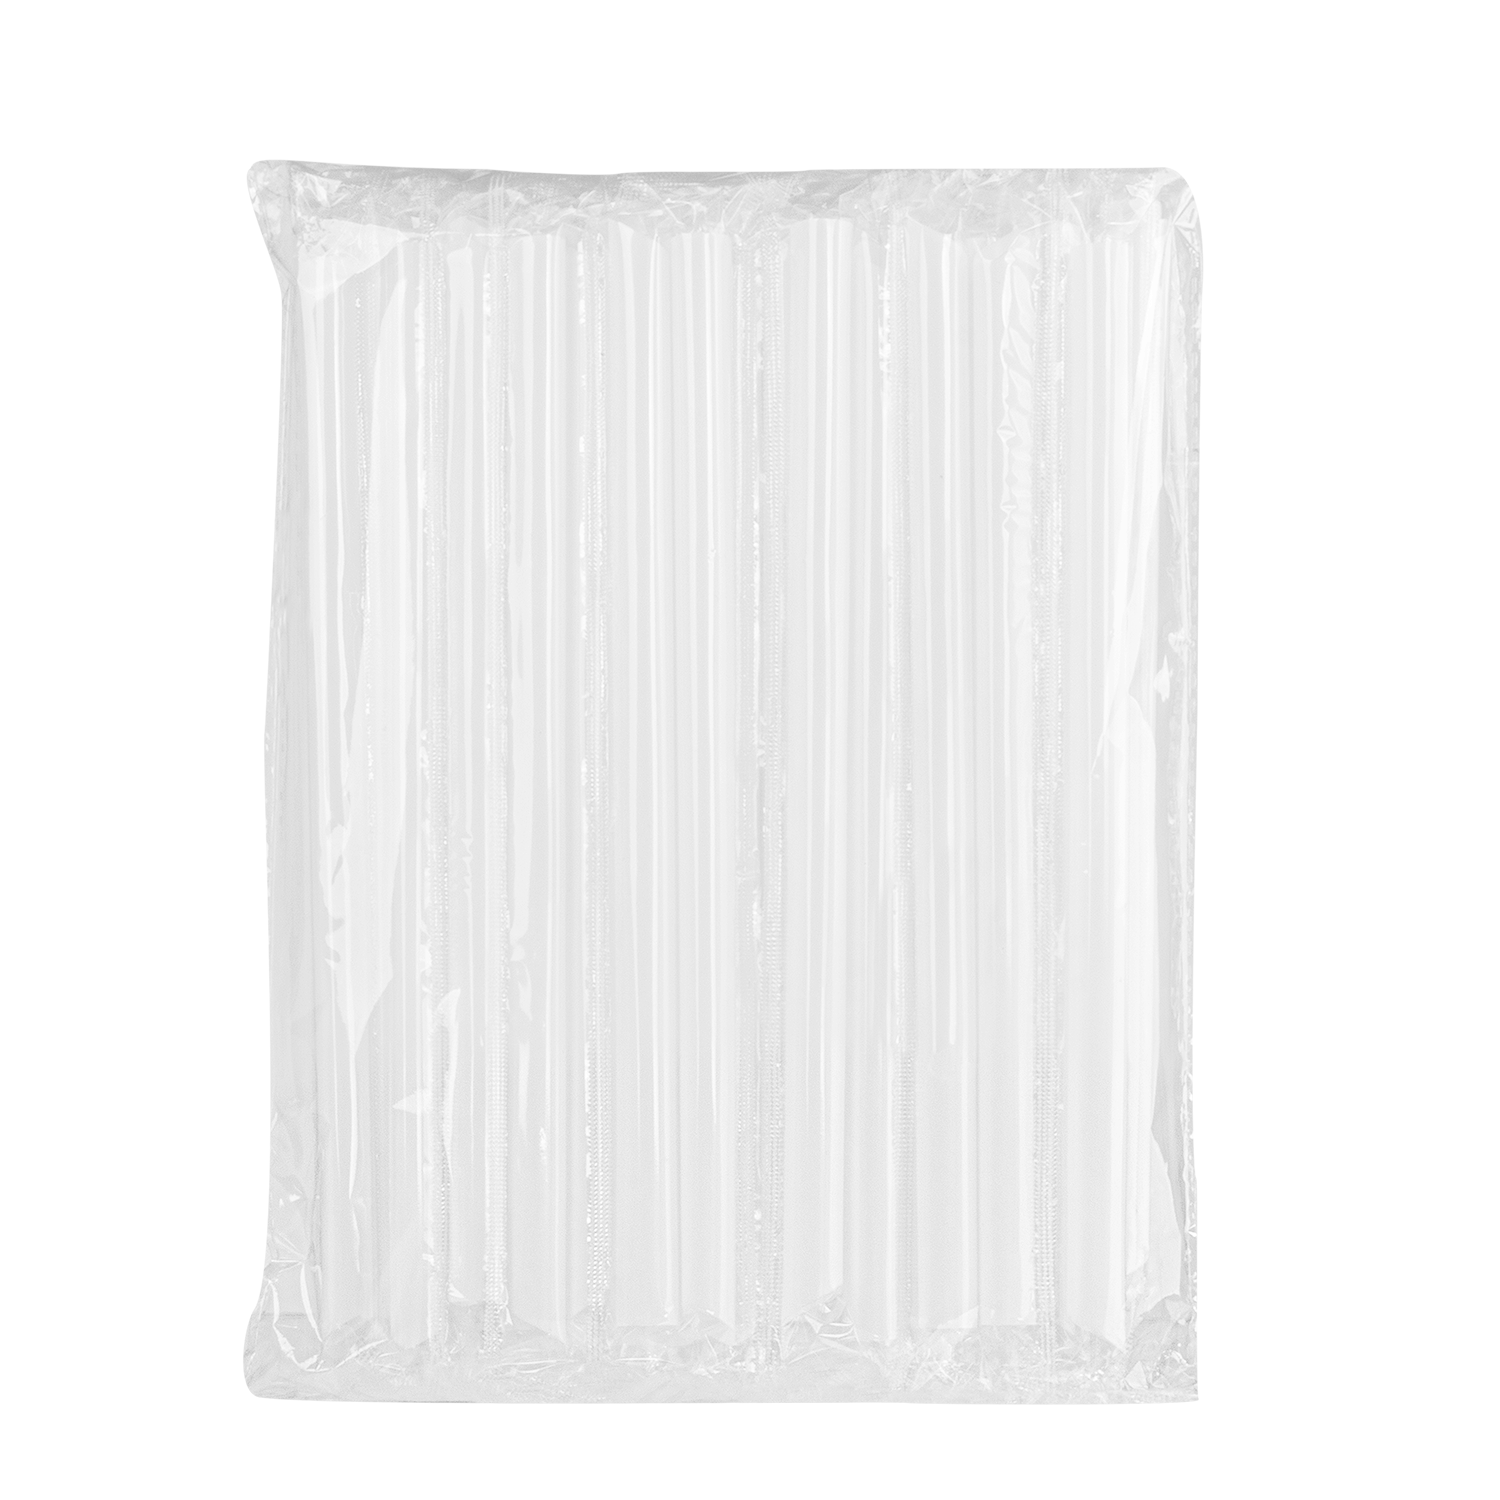 Karat 9" Diagonal Cut Boba Straws Poly Wrapped, White - 1,600 pcs